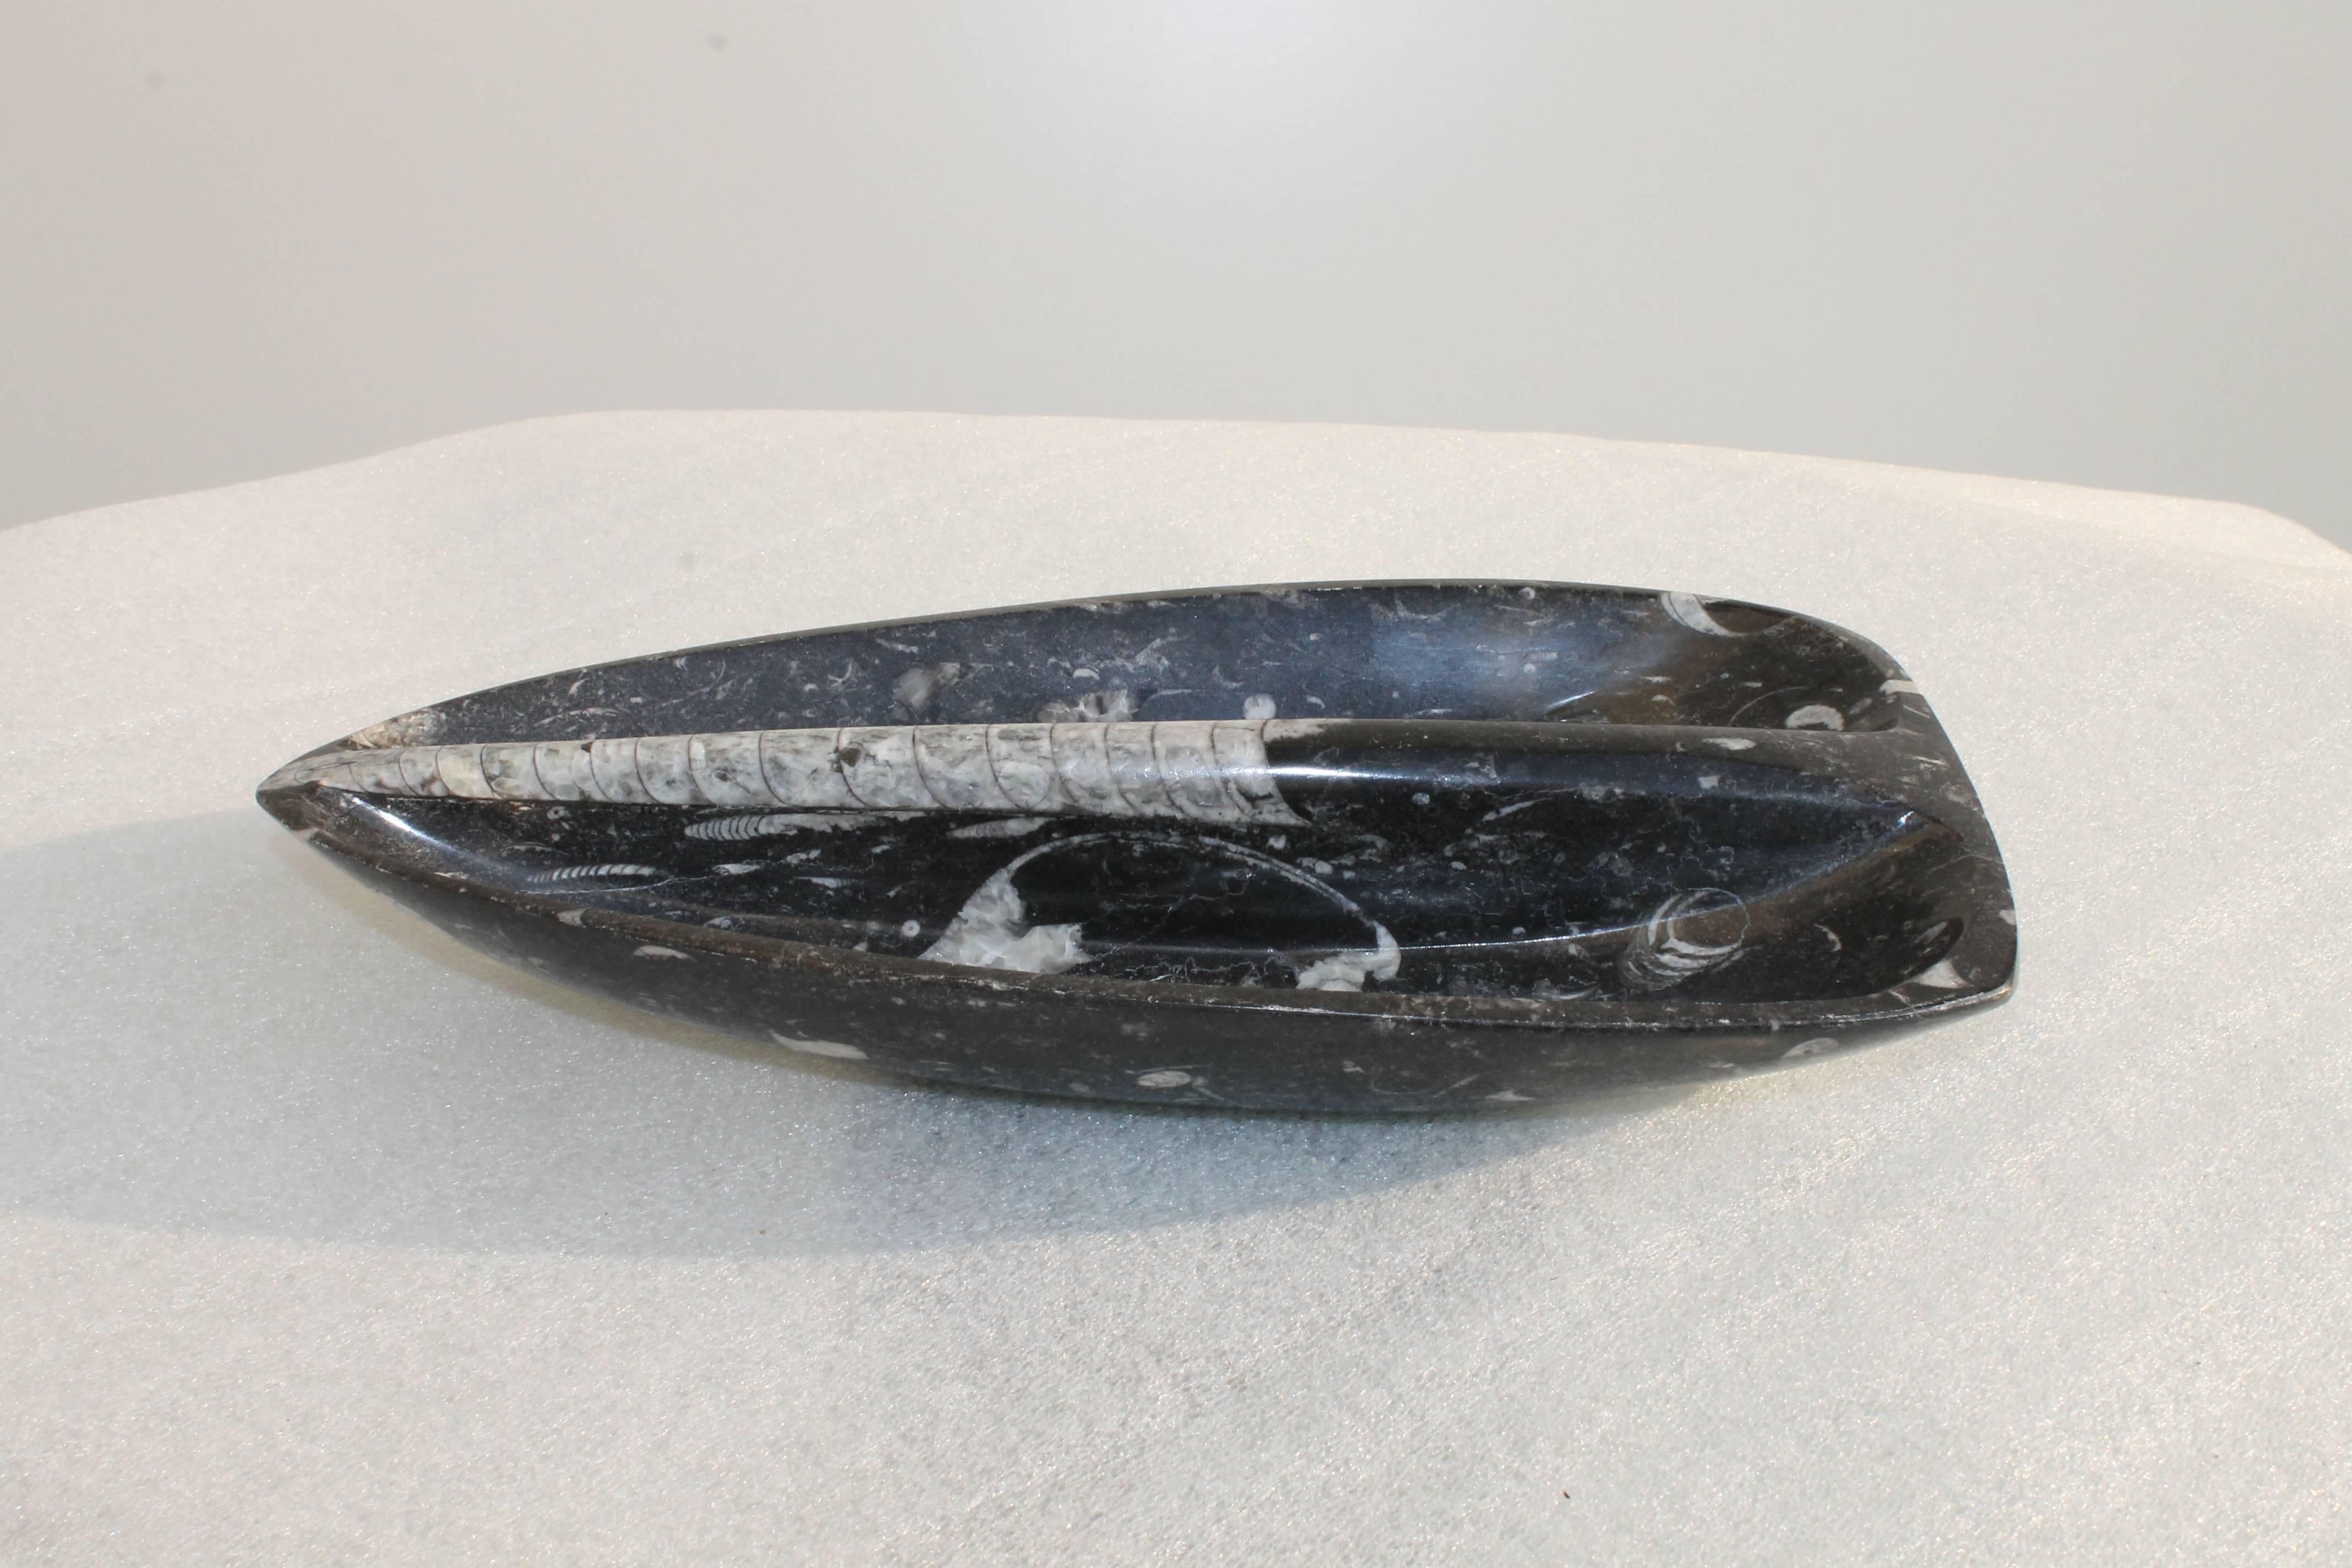 Vide-poche (Taschenentleerer) aus schwarzem und weißem Marmor, datiert um 1960.